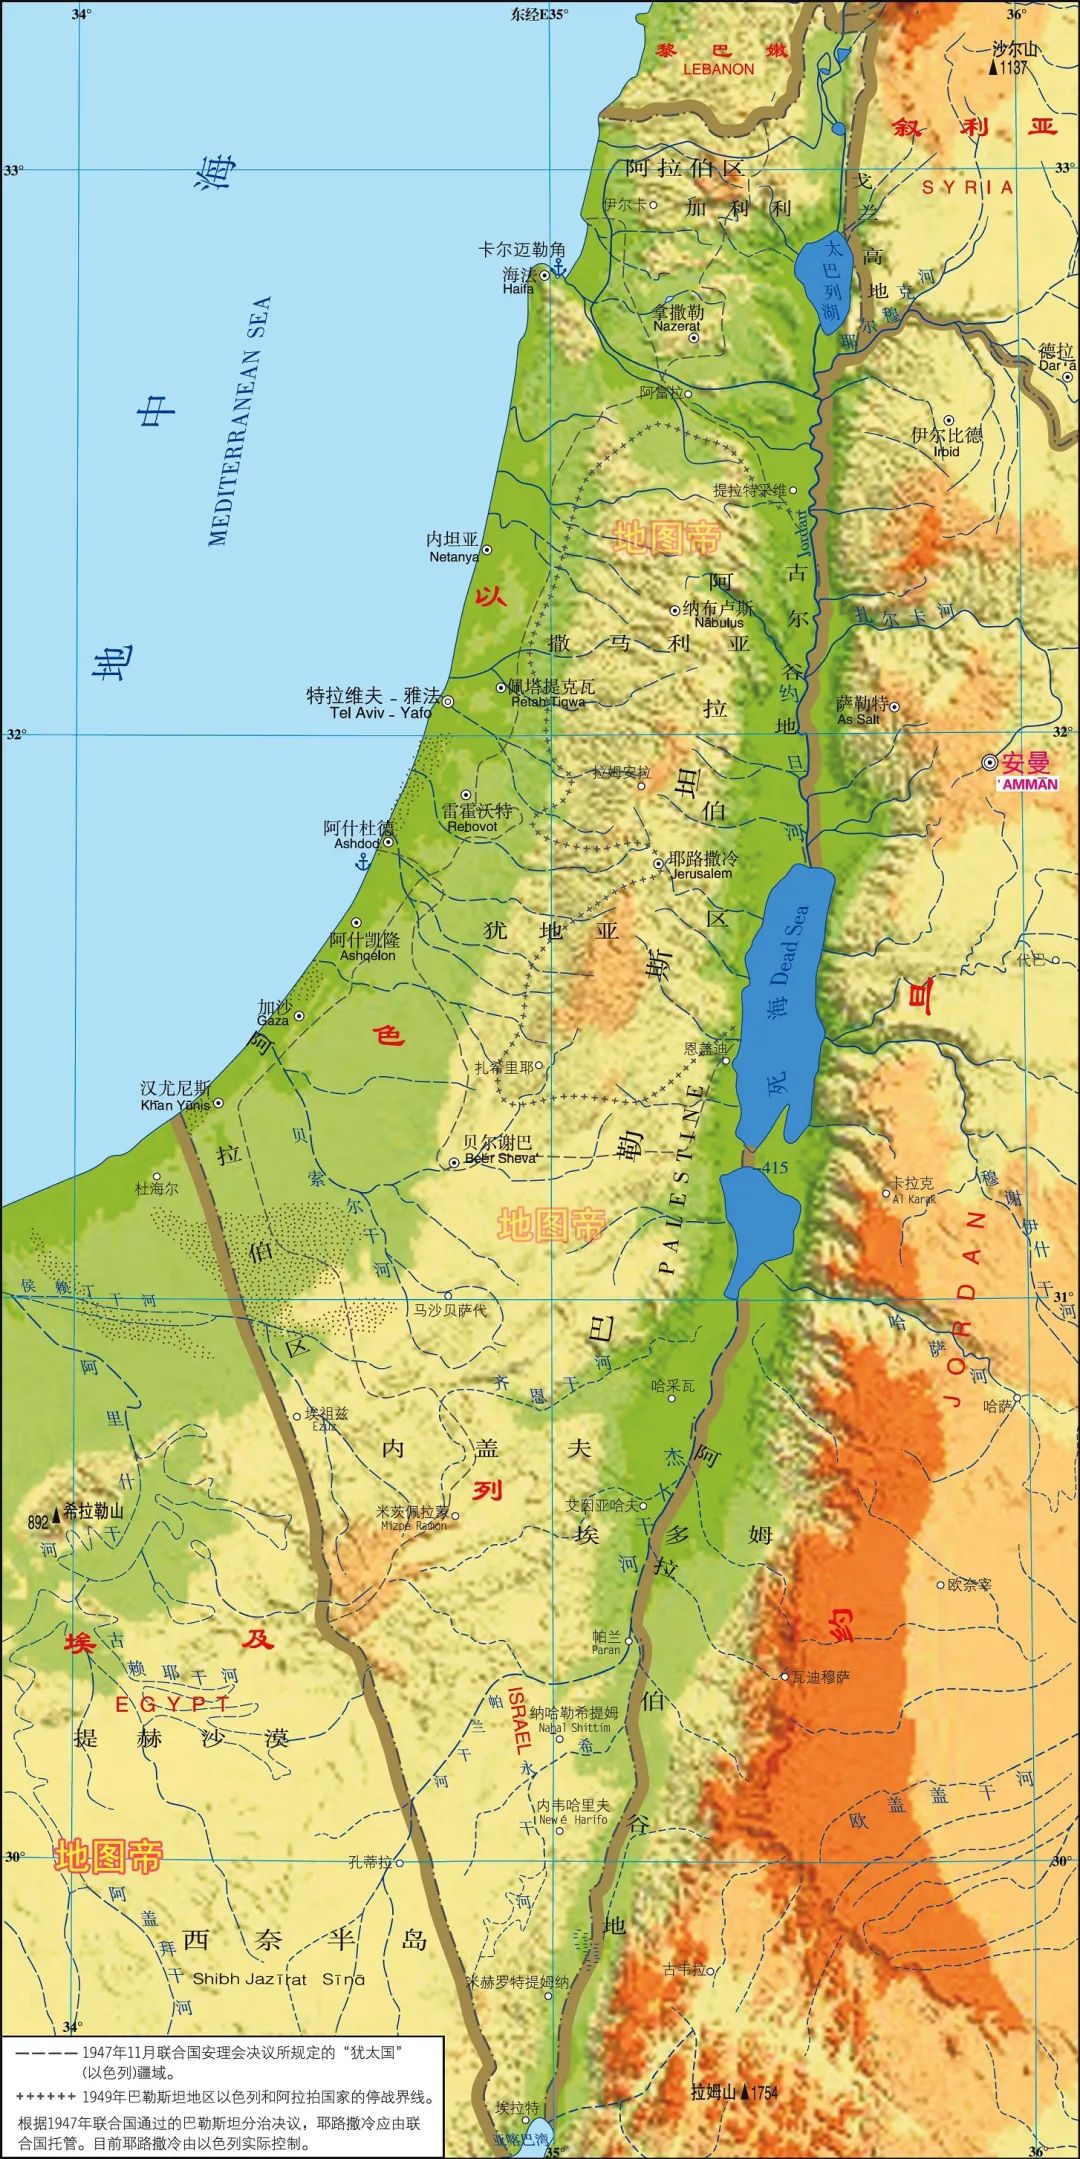 历史| 近期热点话题轰炸巴勒斯坦的以色列领土多大?